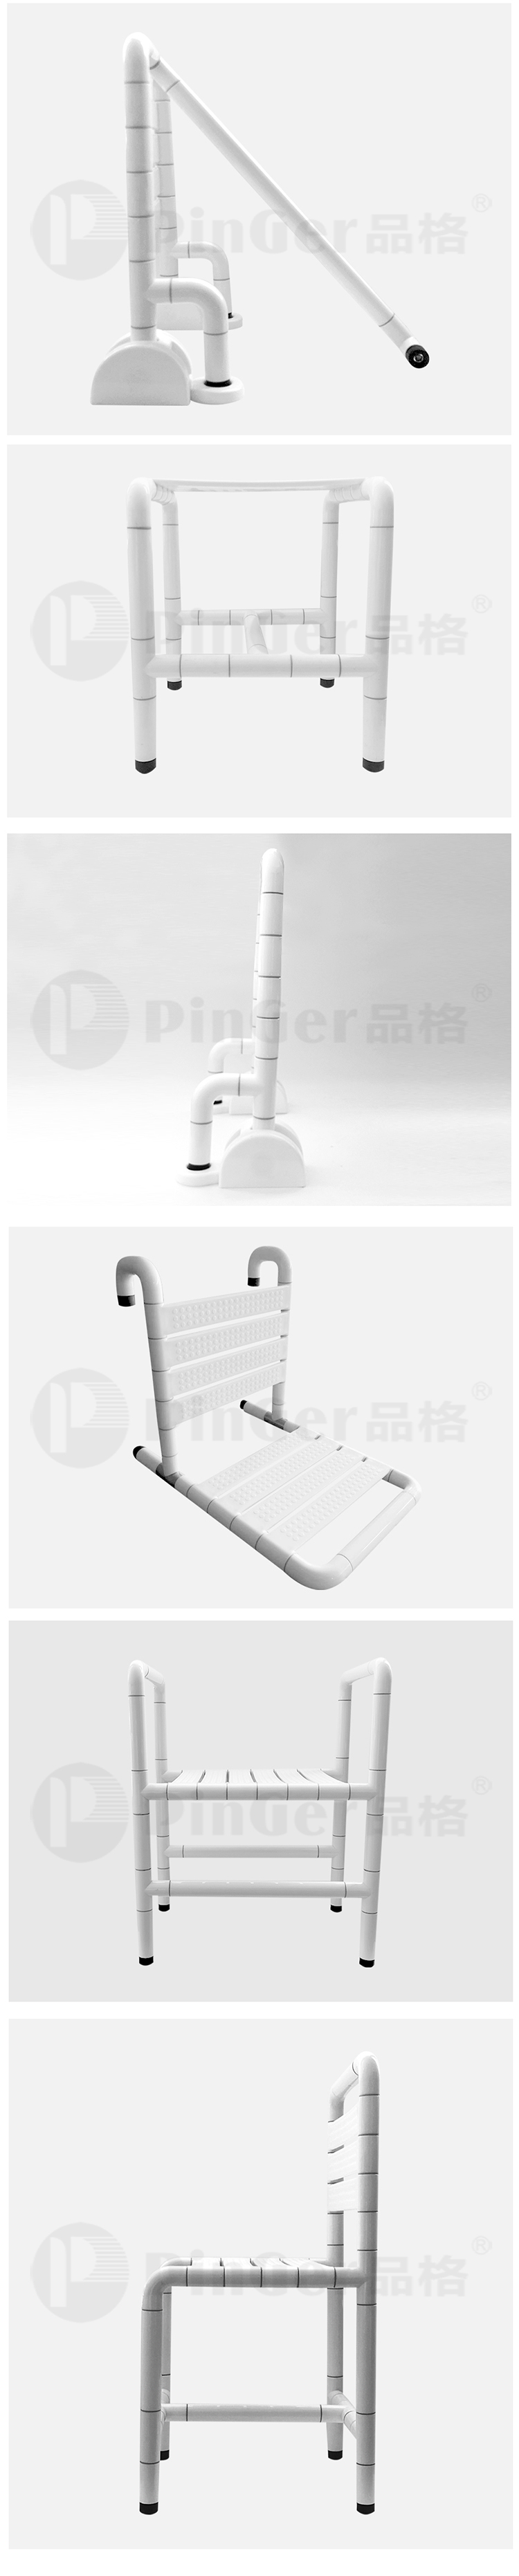 Ghế tắm nylon chống trượt an toàn cho người cao tuổi cho bồn tắm